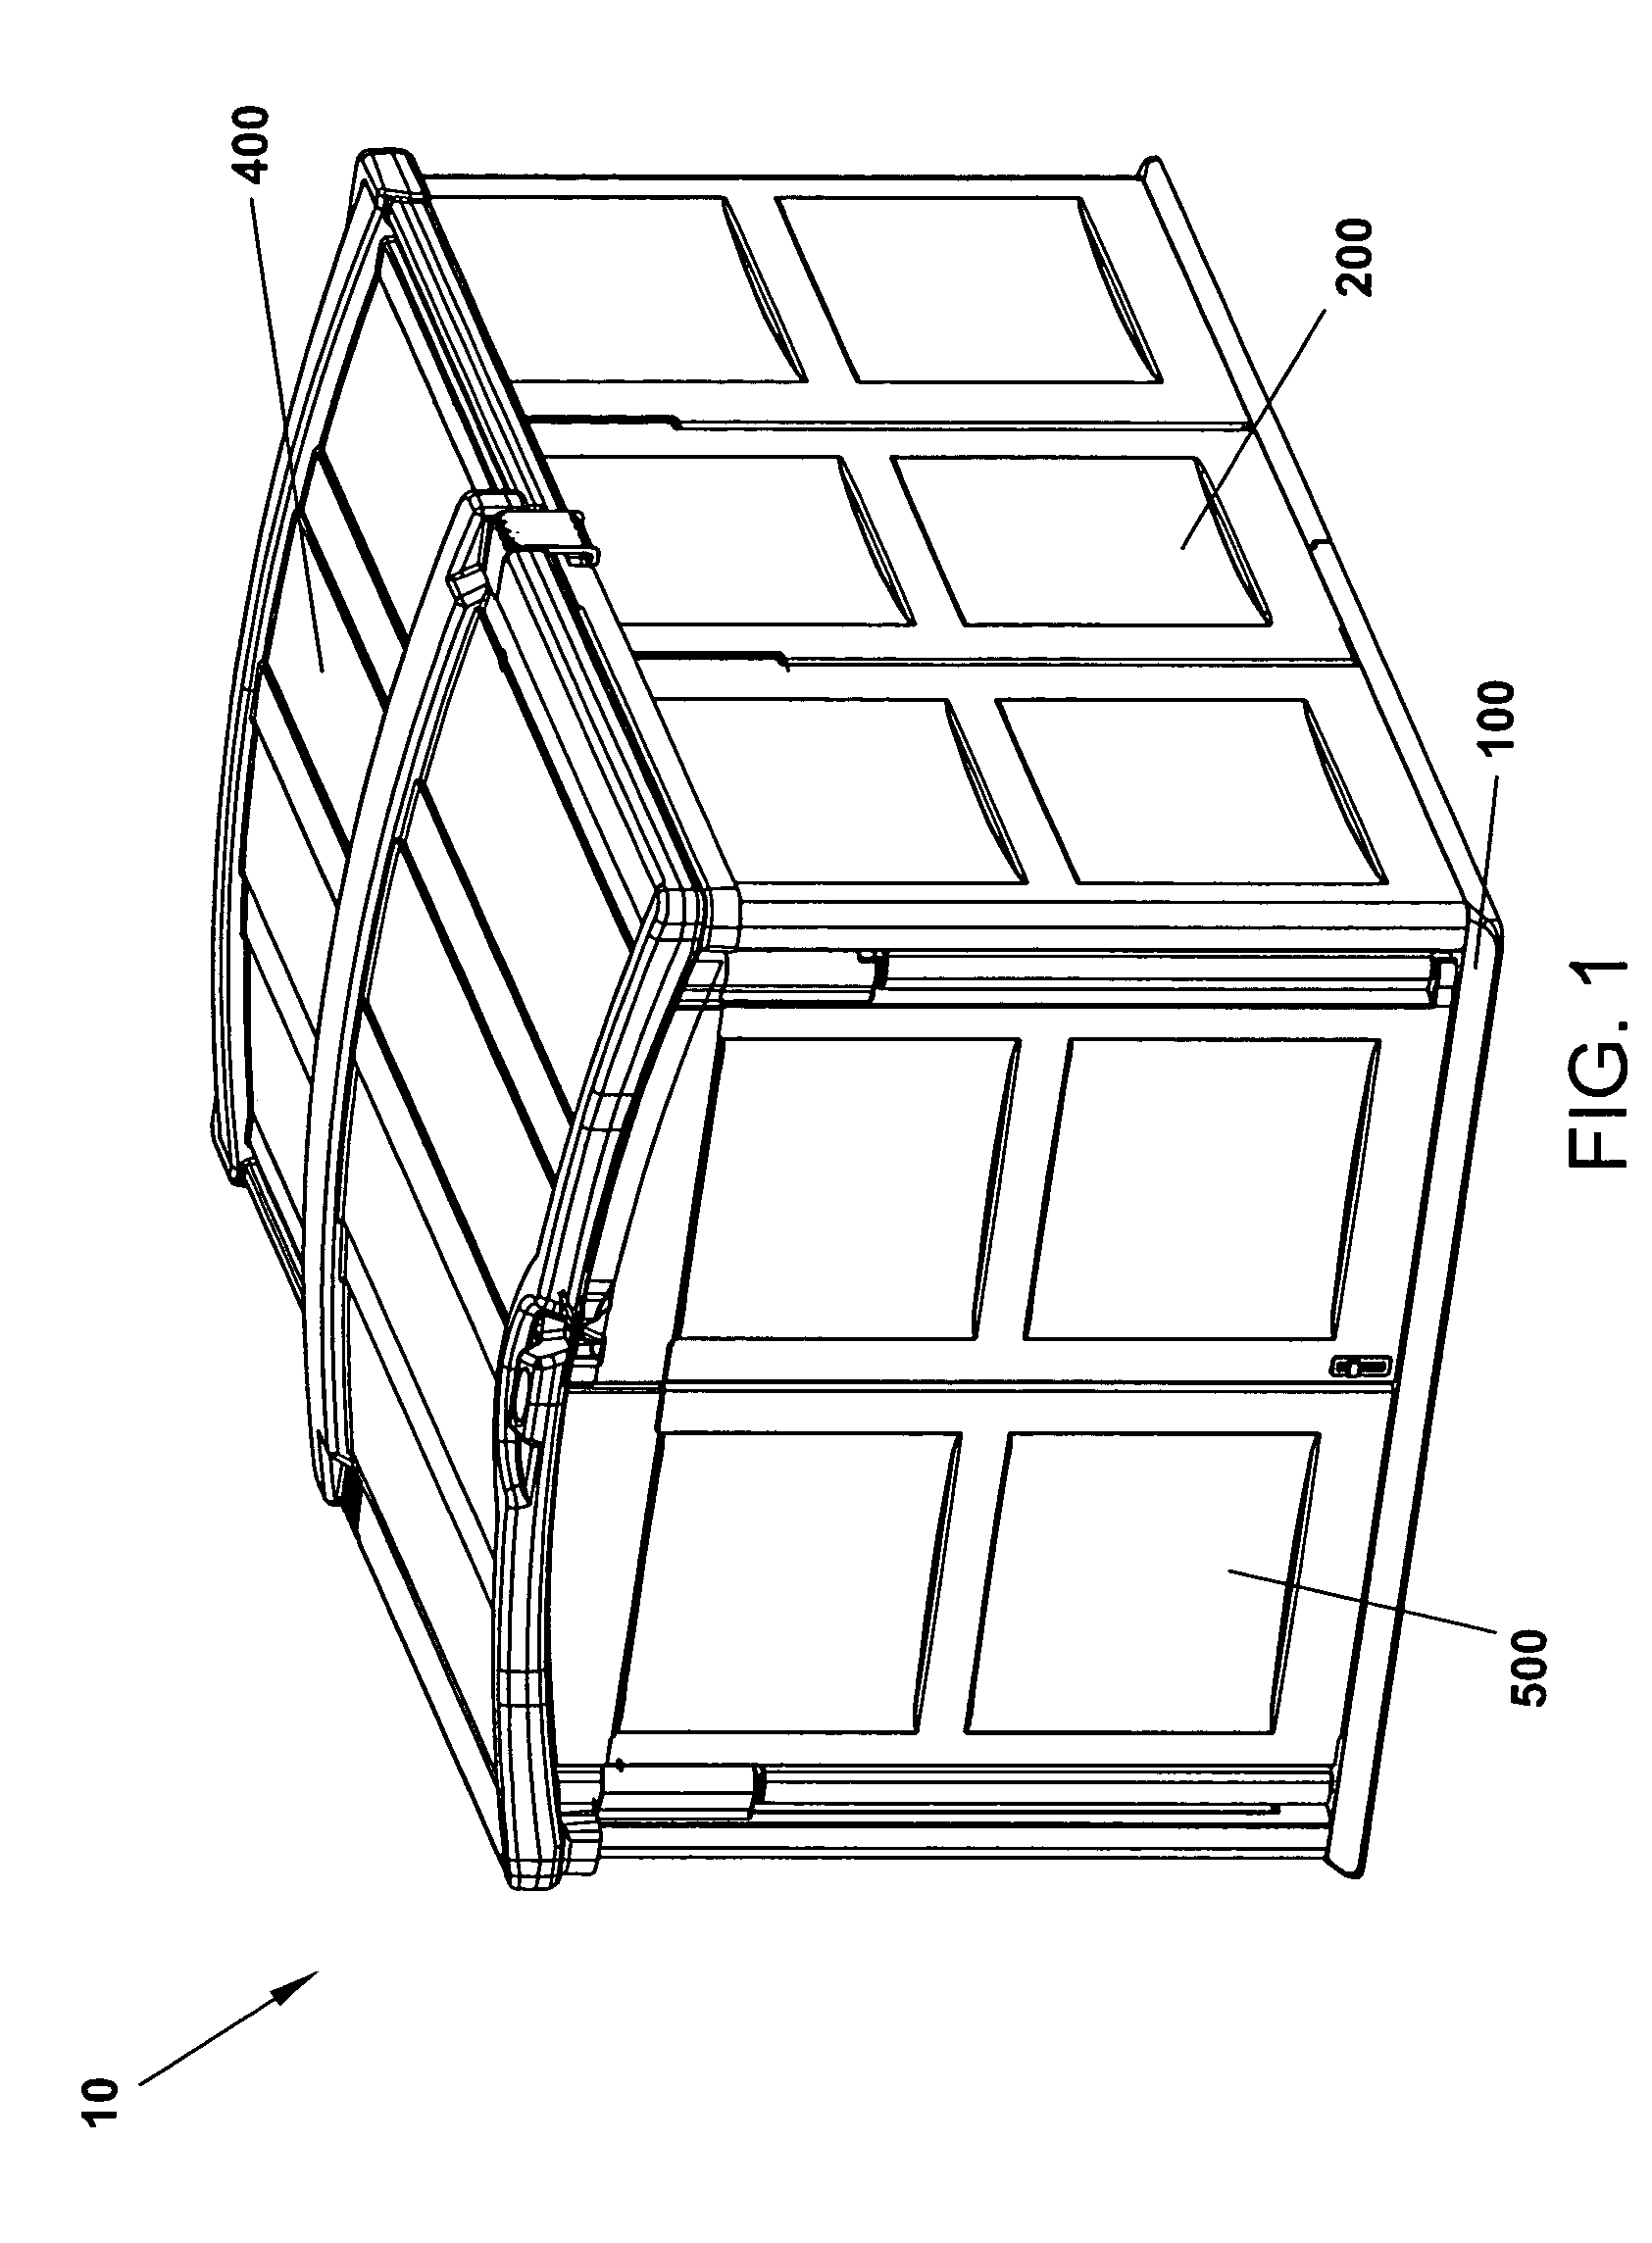 Low profile plastic panel enclosure